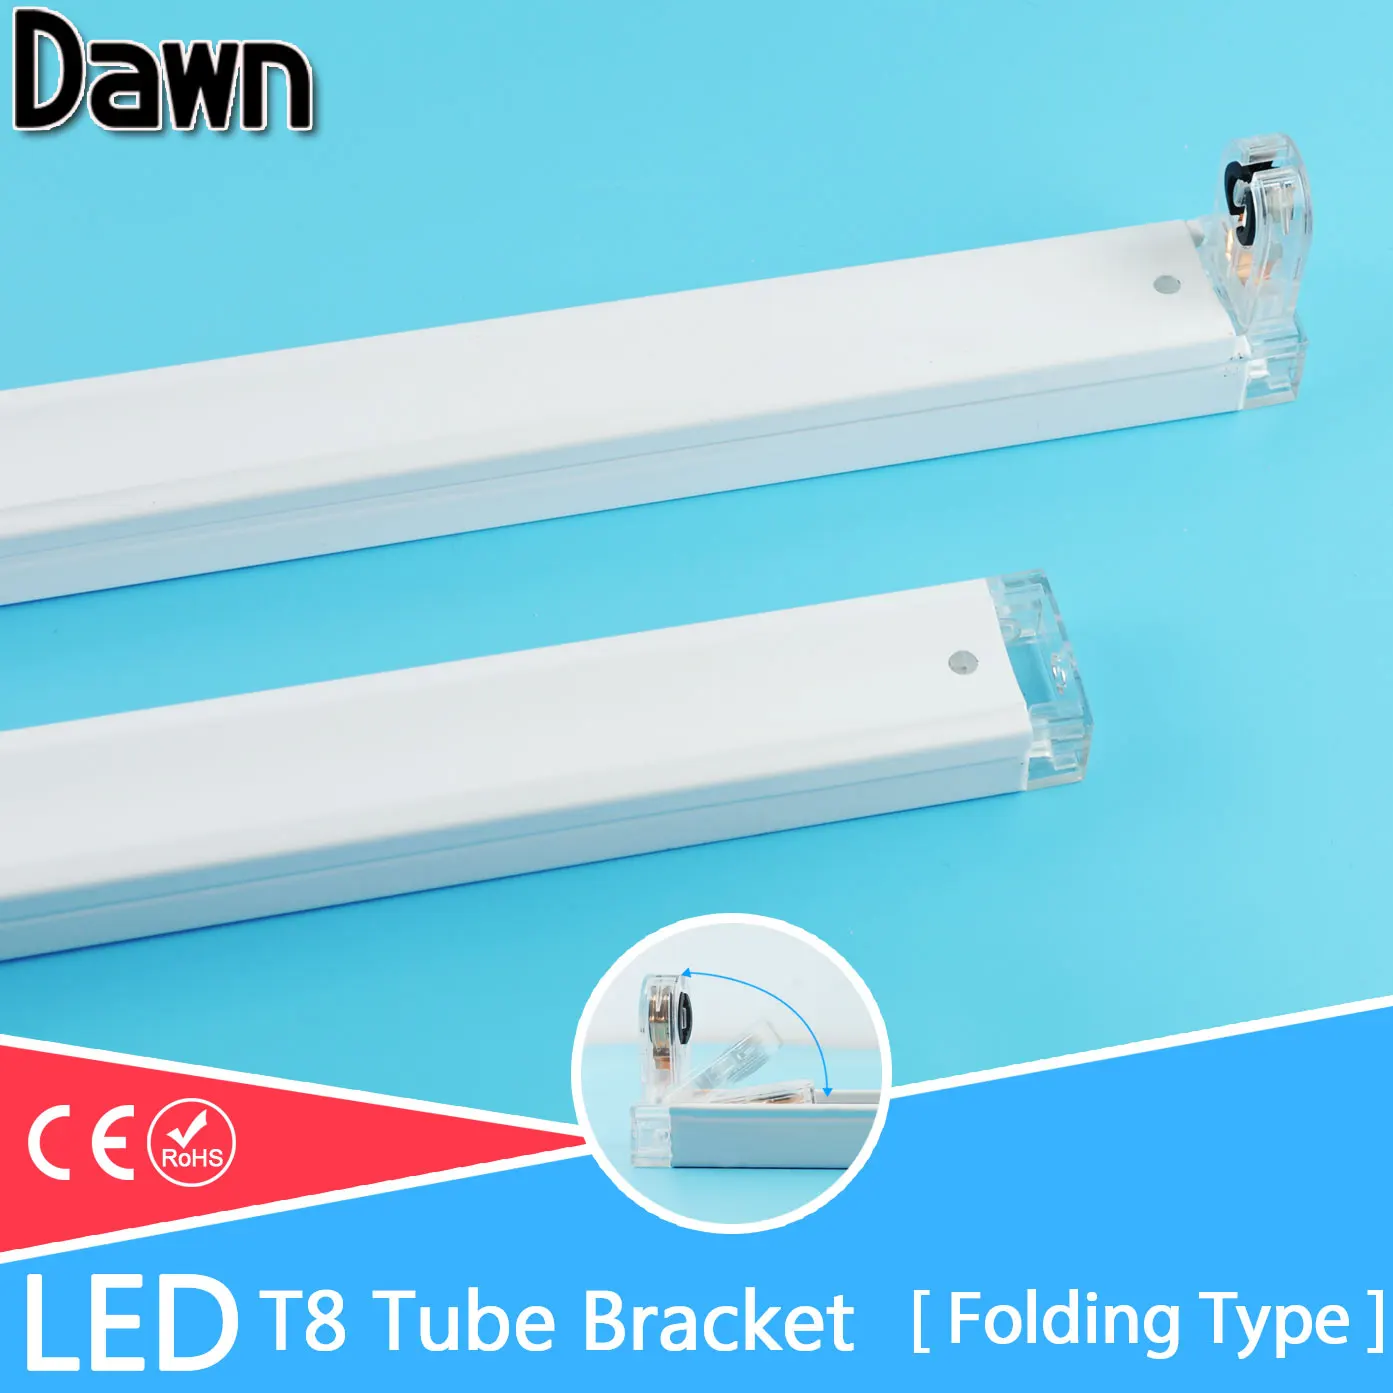 Free Shipping Folding Type T8 LED Tube Fixtures Bracket For 2Ft 60cm 600mm Fluorescent Lamp Tube Light/Support/Base/Holder Tube